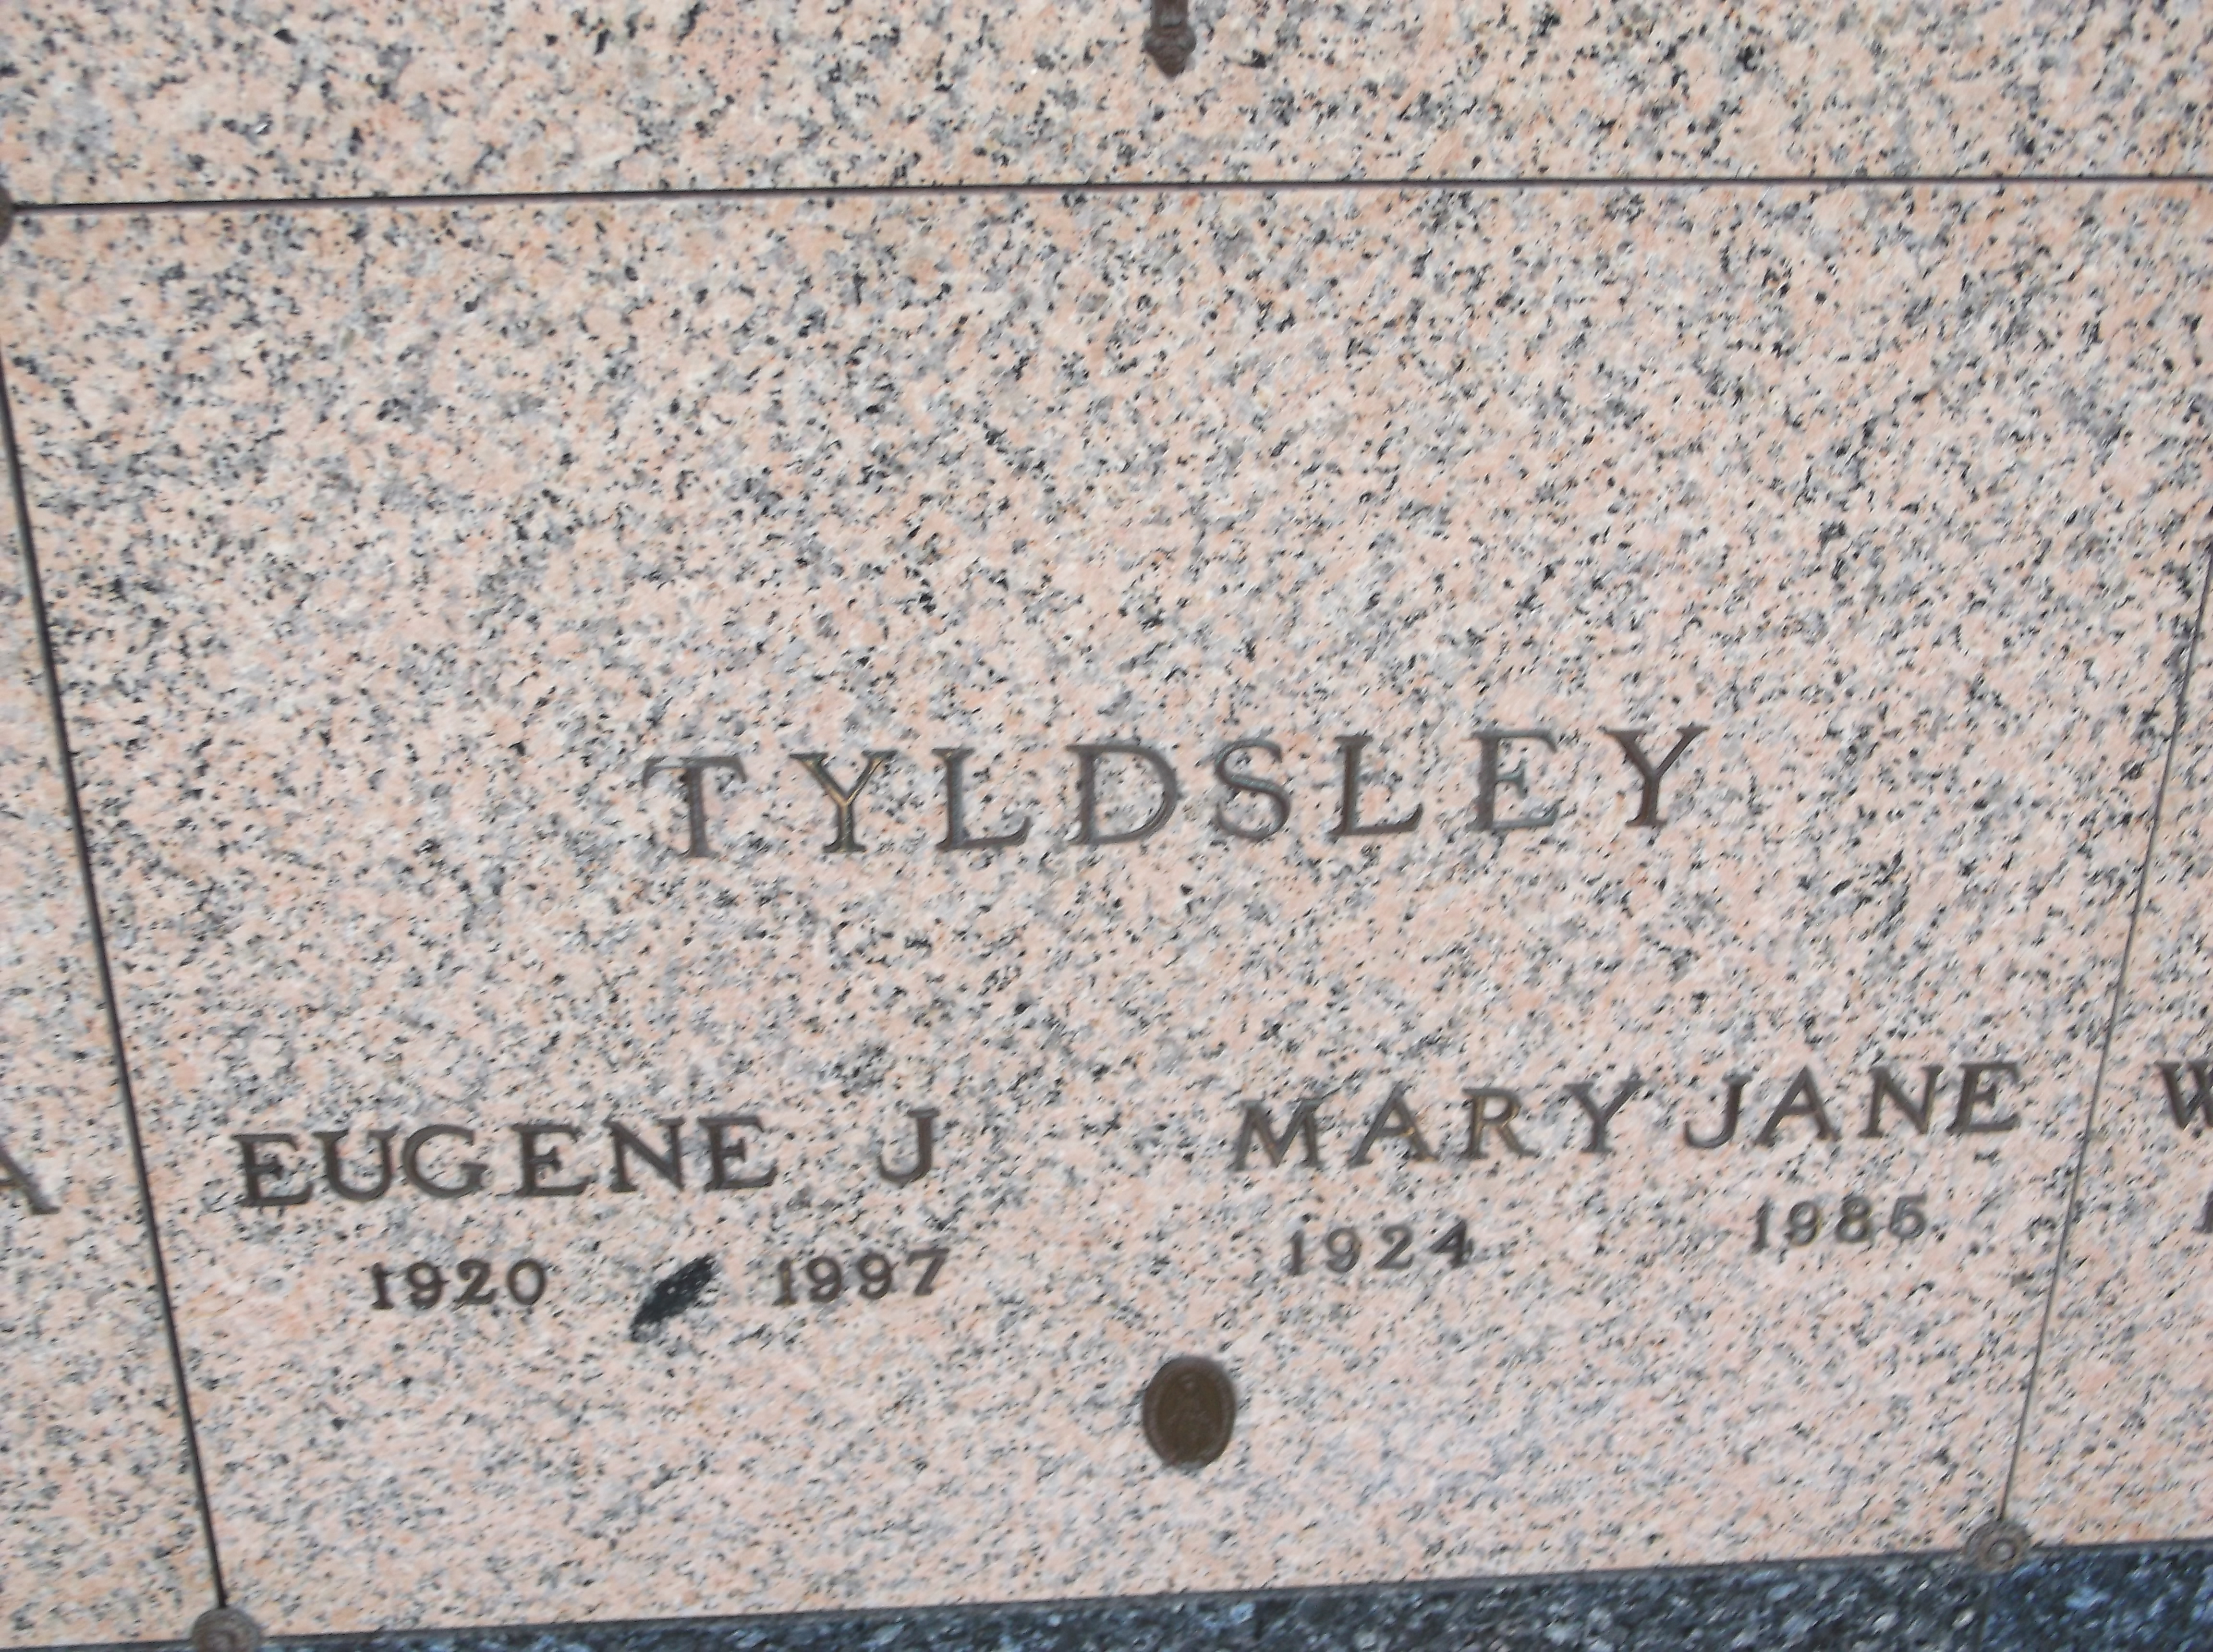 Mary Jane Tyldsley